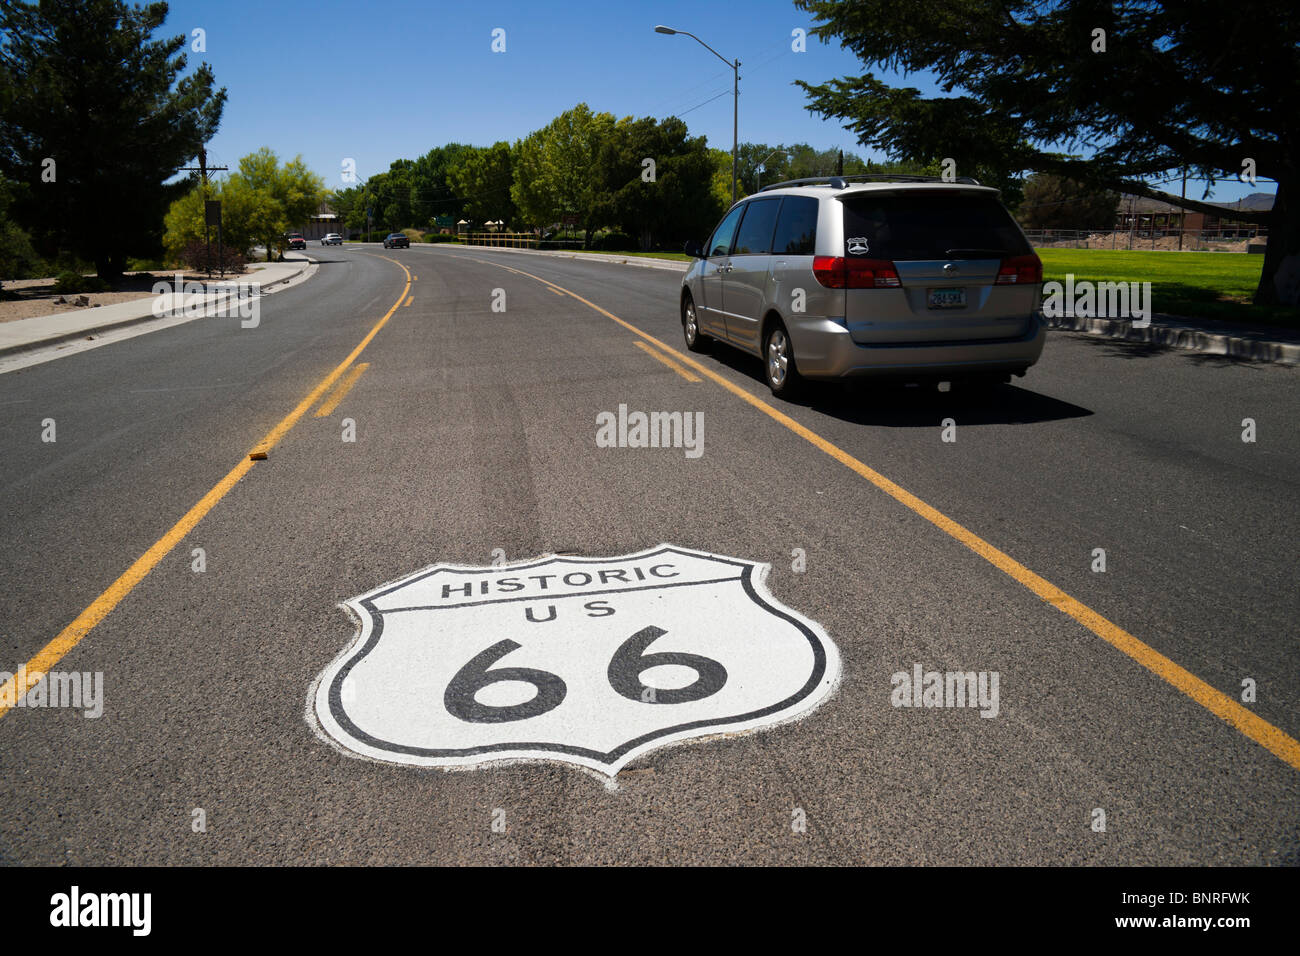 Route 66 road trip Arizona - Kingman AZ ville historique - nous historique route 66 marquage badge sur l'autoroute centre lane Banque D'Images